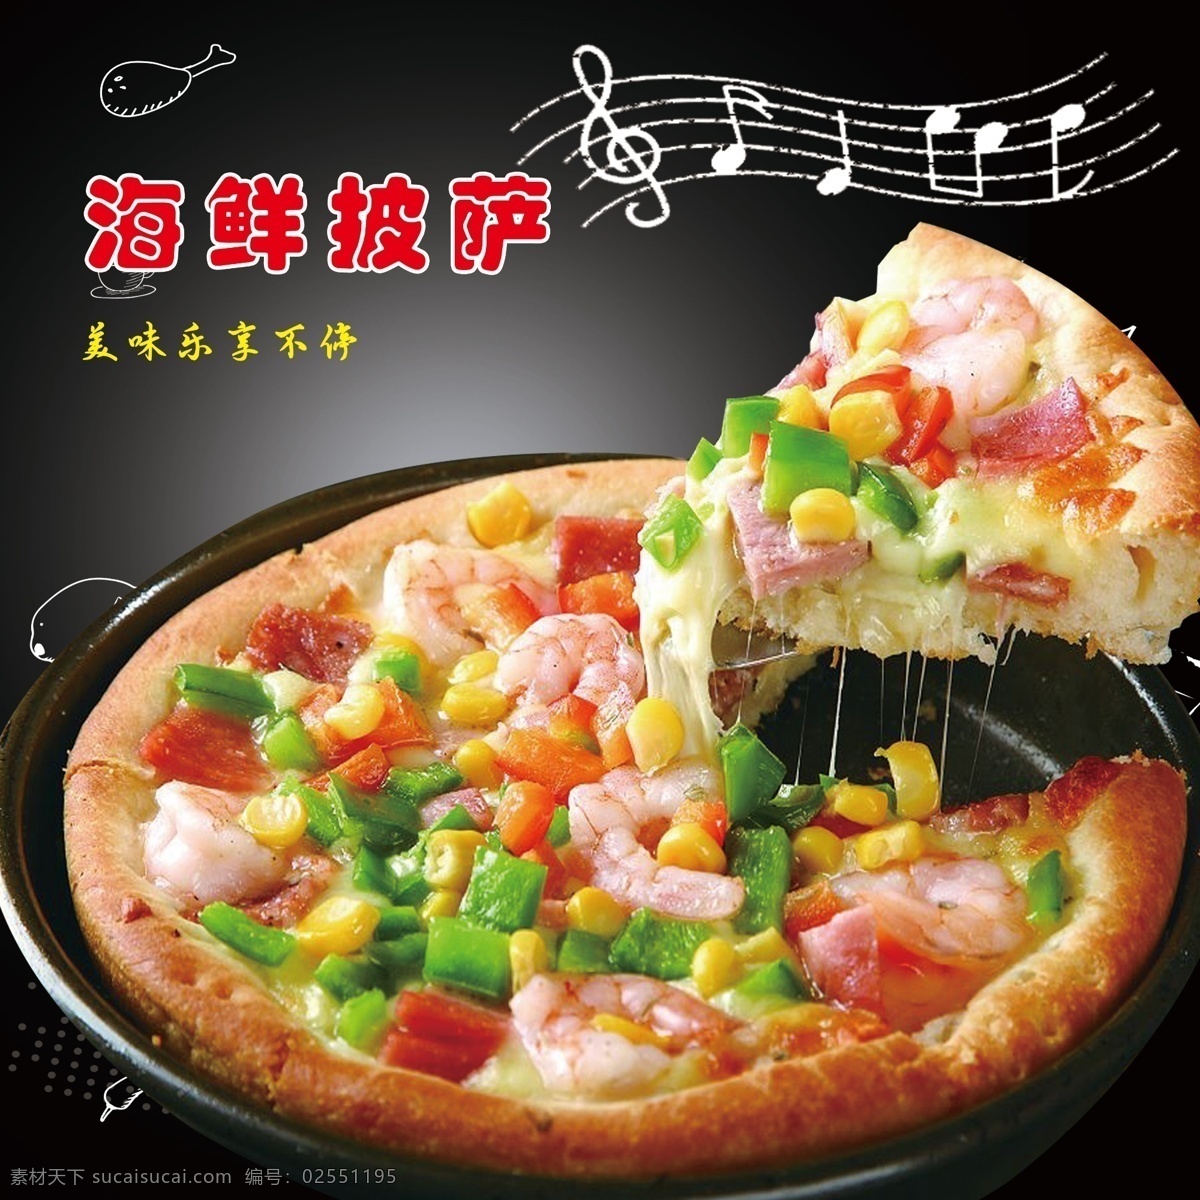 海鲜 披萨 300 披萨小吃 辣椒 宣传海报 美食 餐饮美食 西餐美食 共享共赢